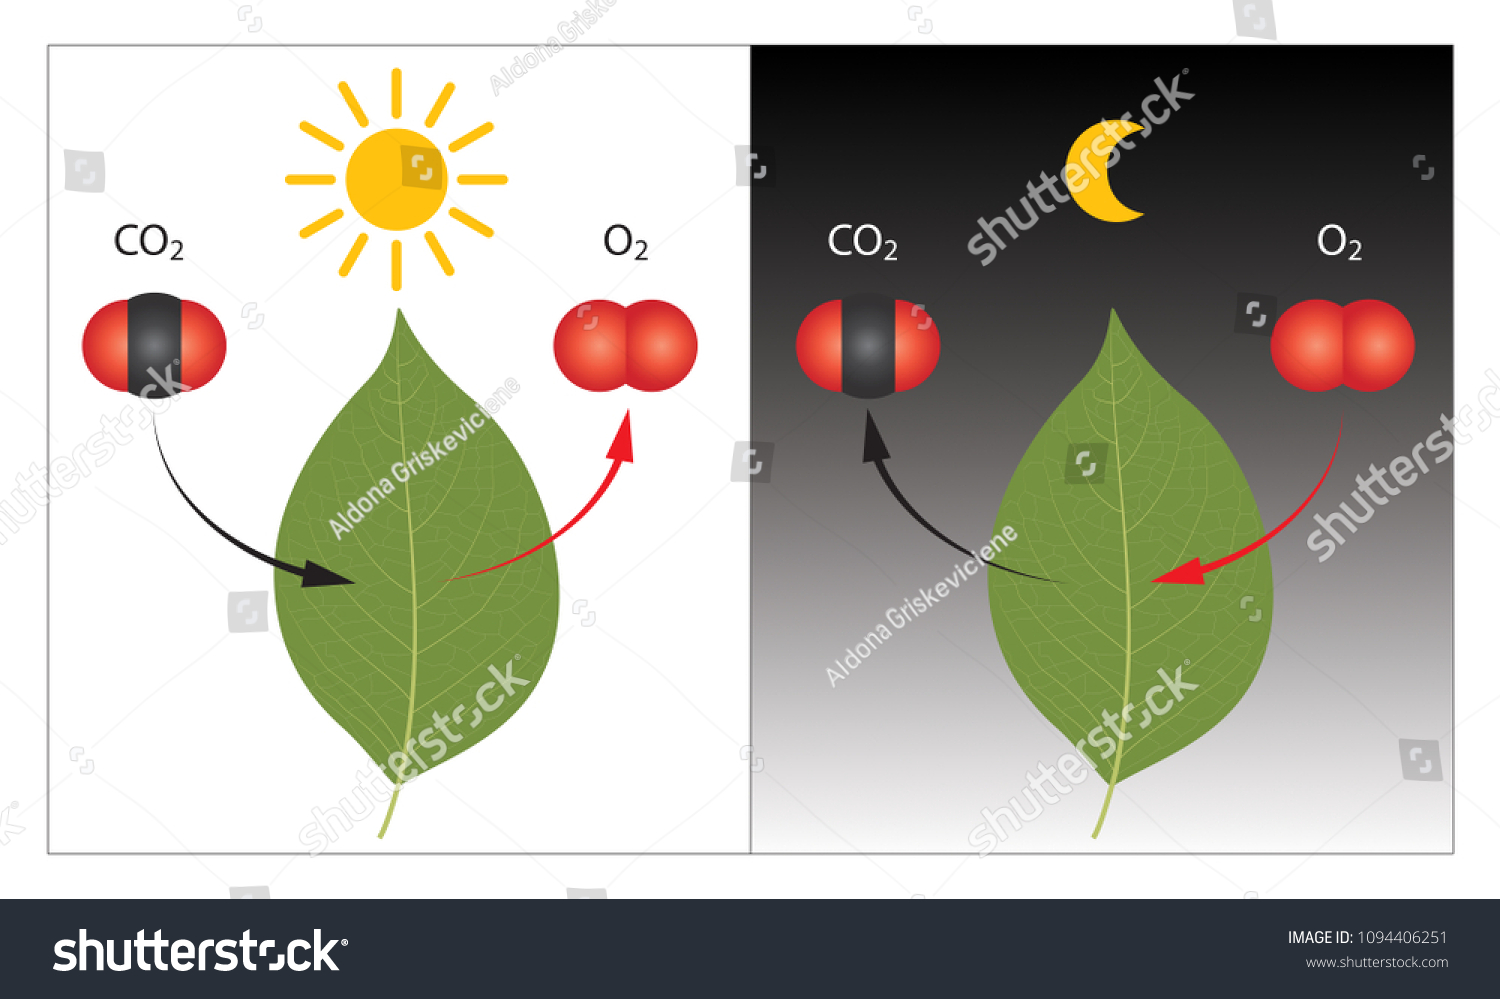 昼と夜の植物の光合成と細胞呼吸の過程 のイラスト素材